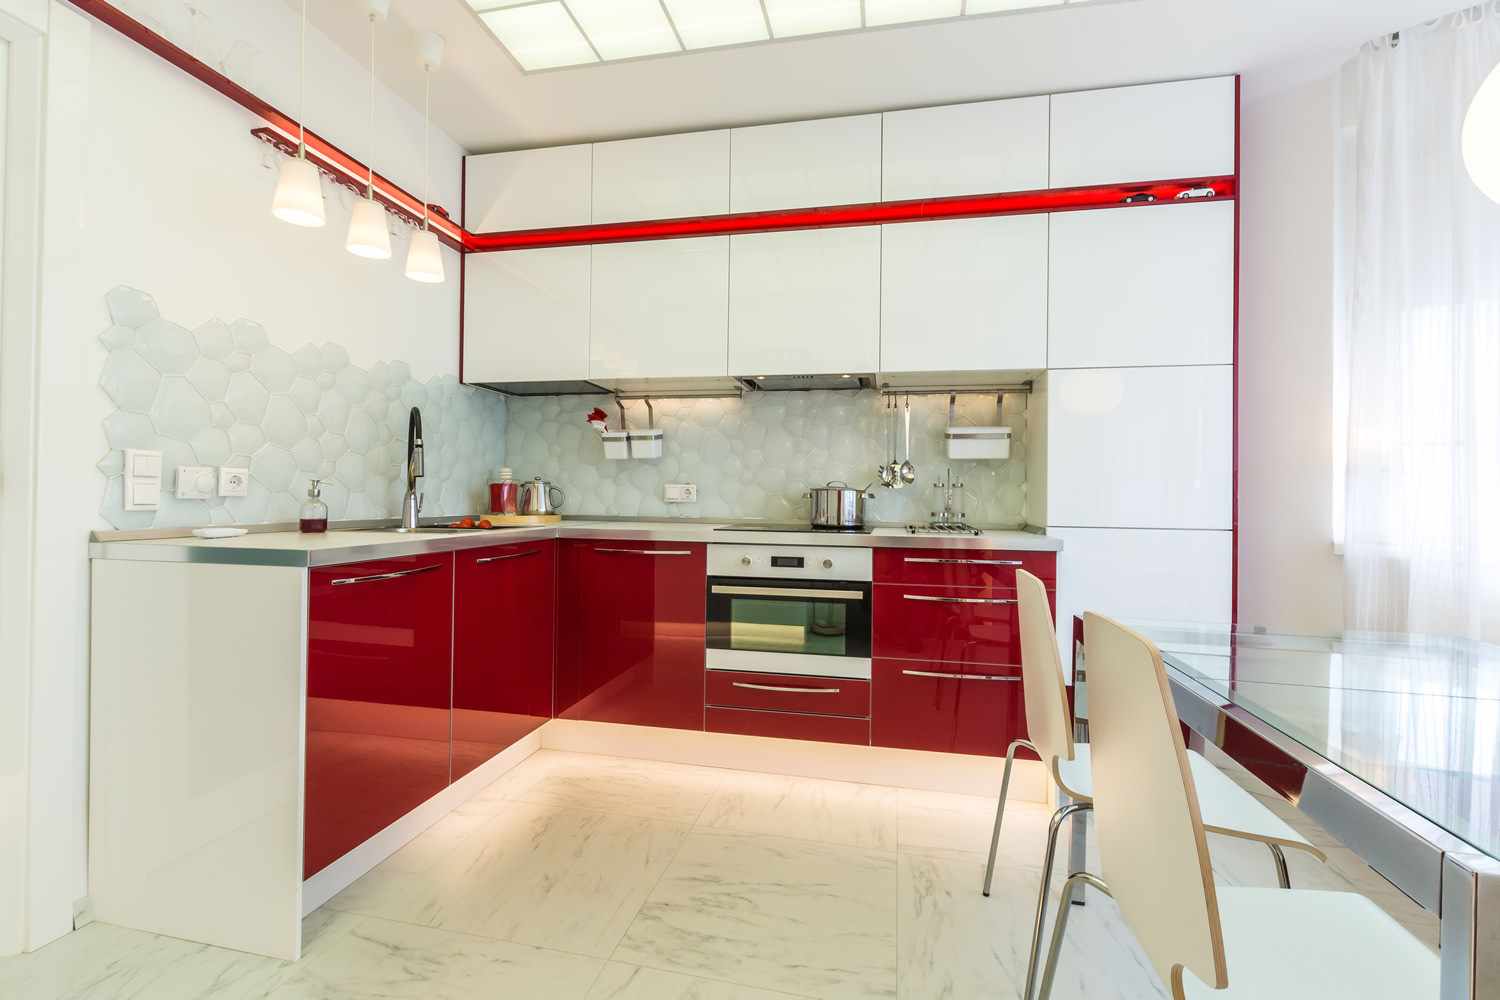 a vörös konyha gyönyörű dekorációjának példája